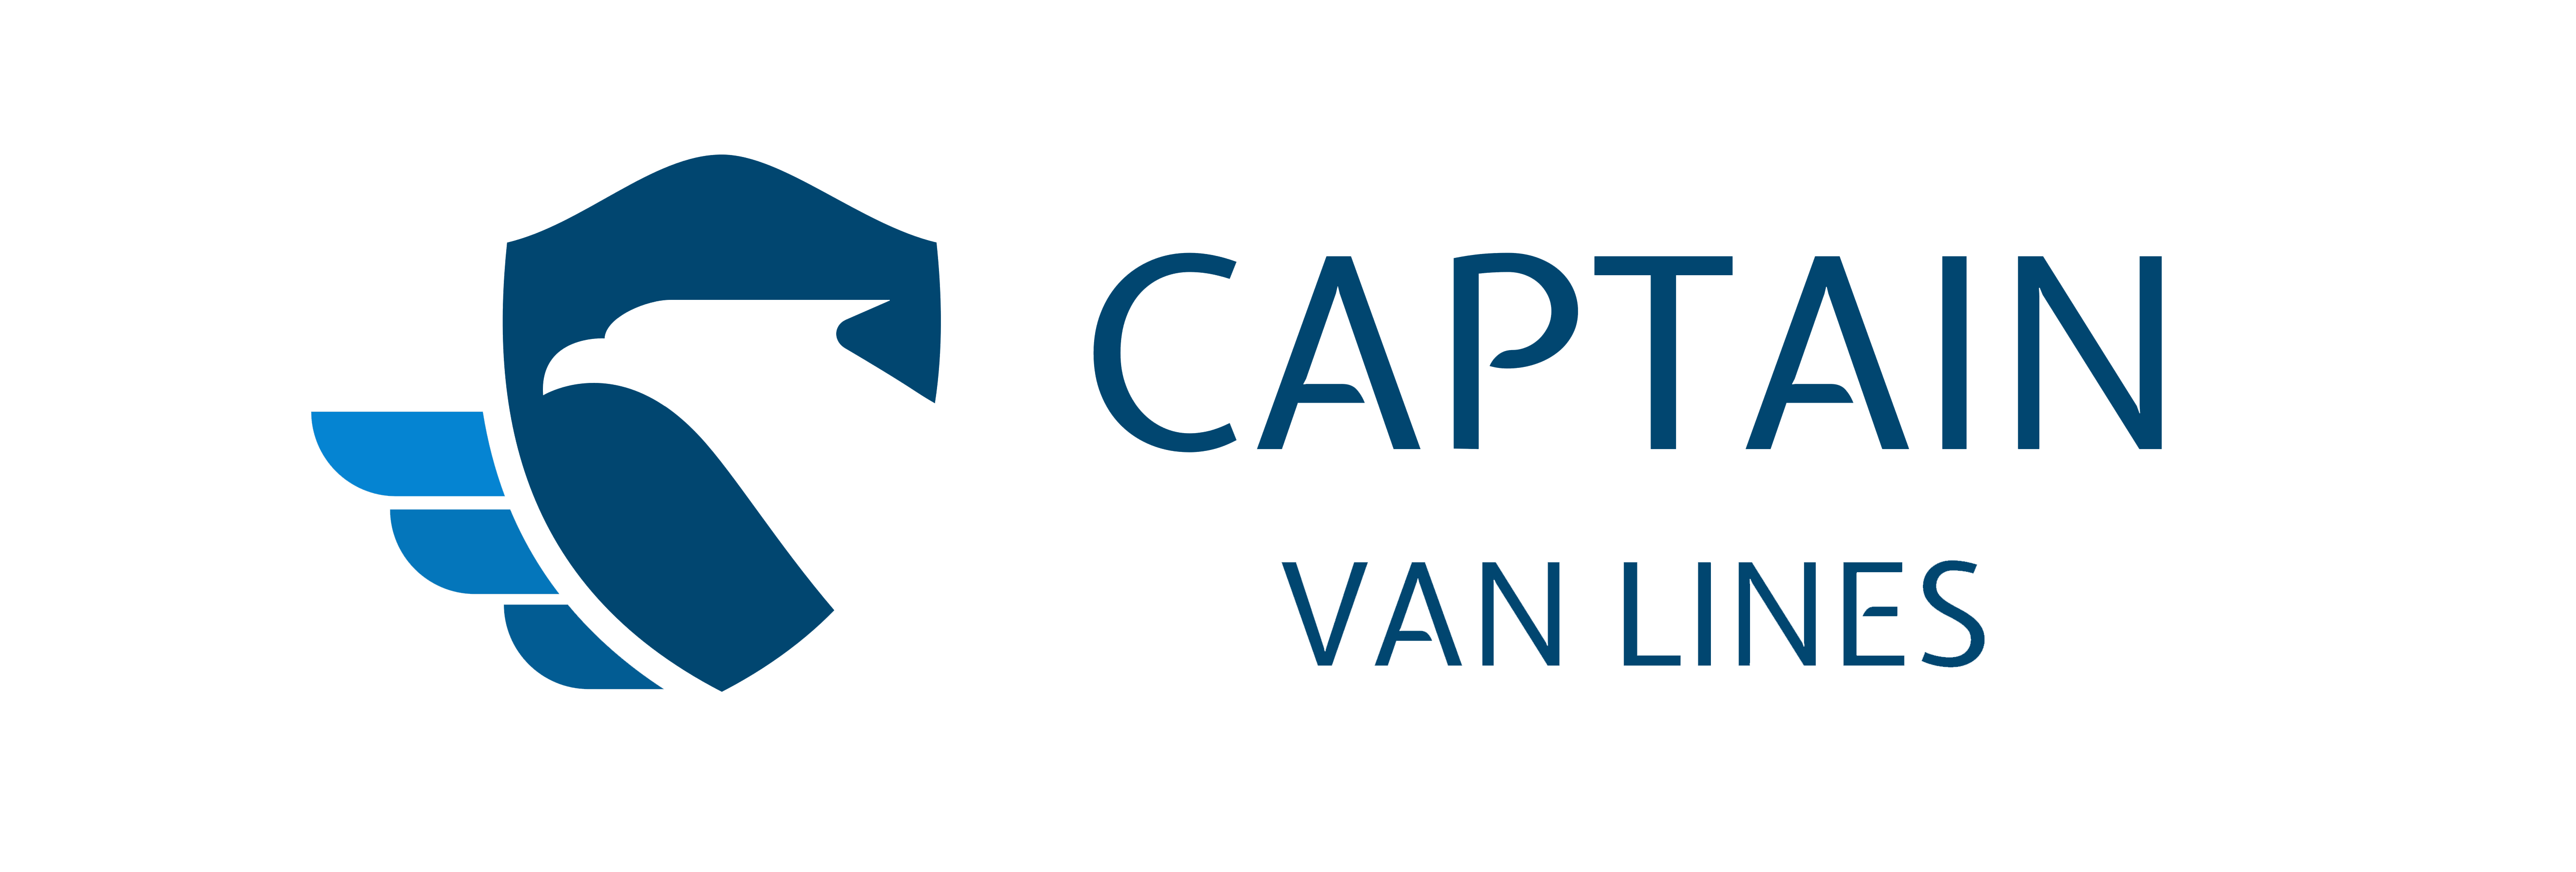 Captain van lines